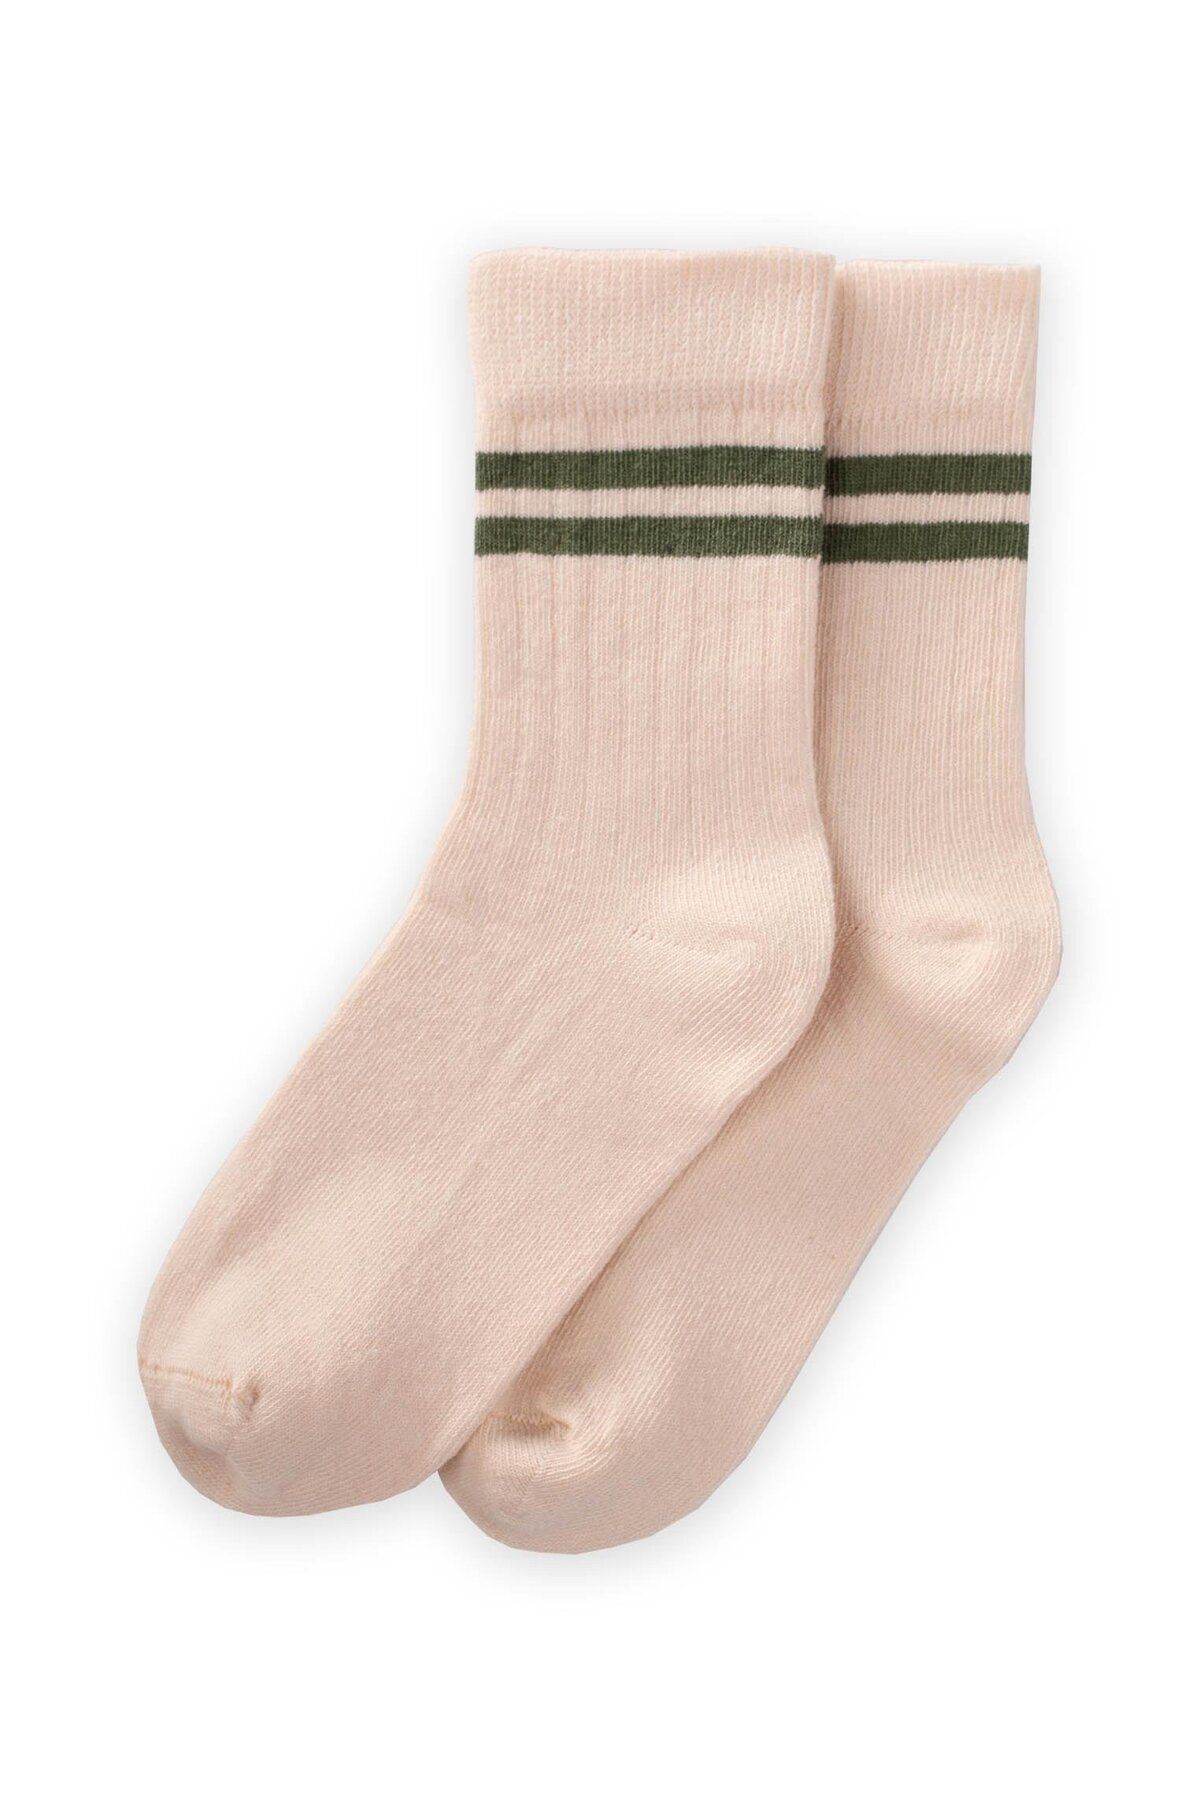 Cigit Çemberli Soket Çorap 2-9 Yaş Haki Yeşil